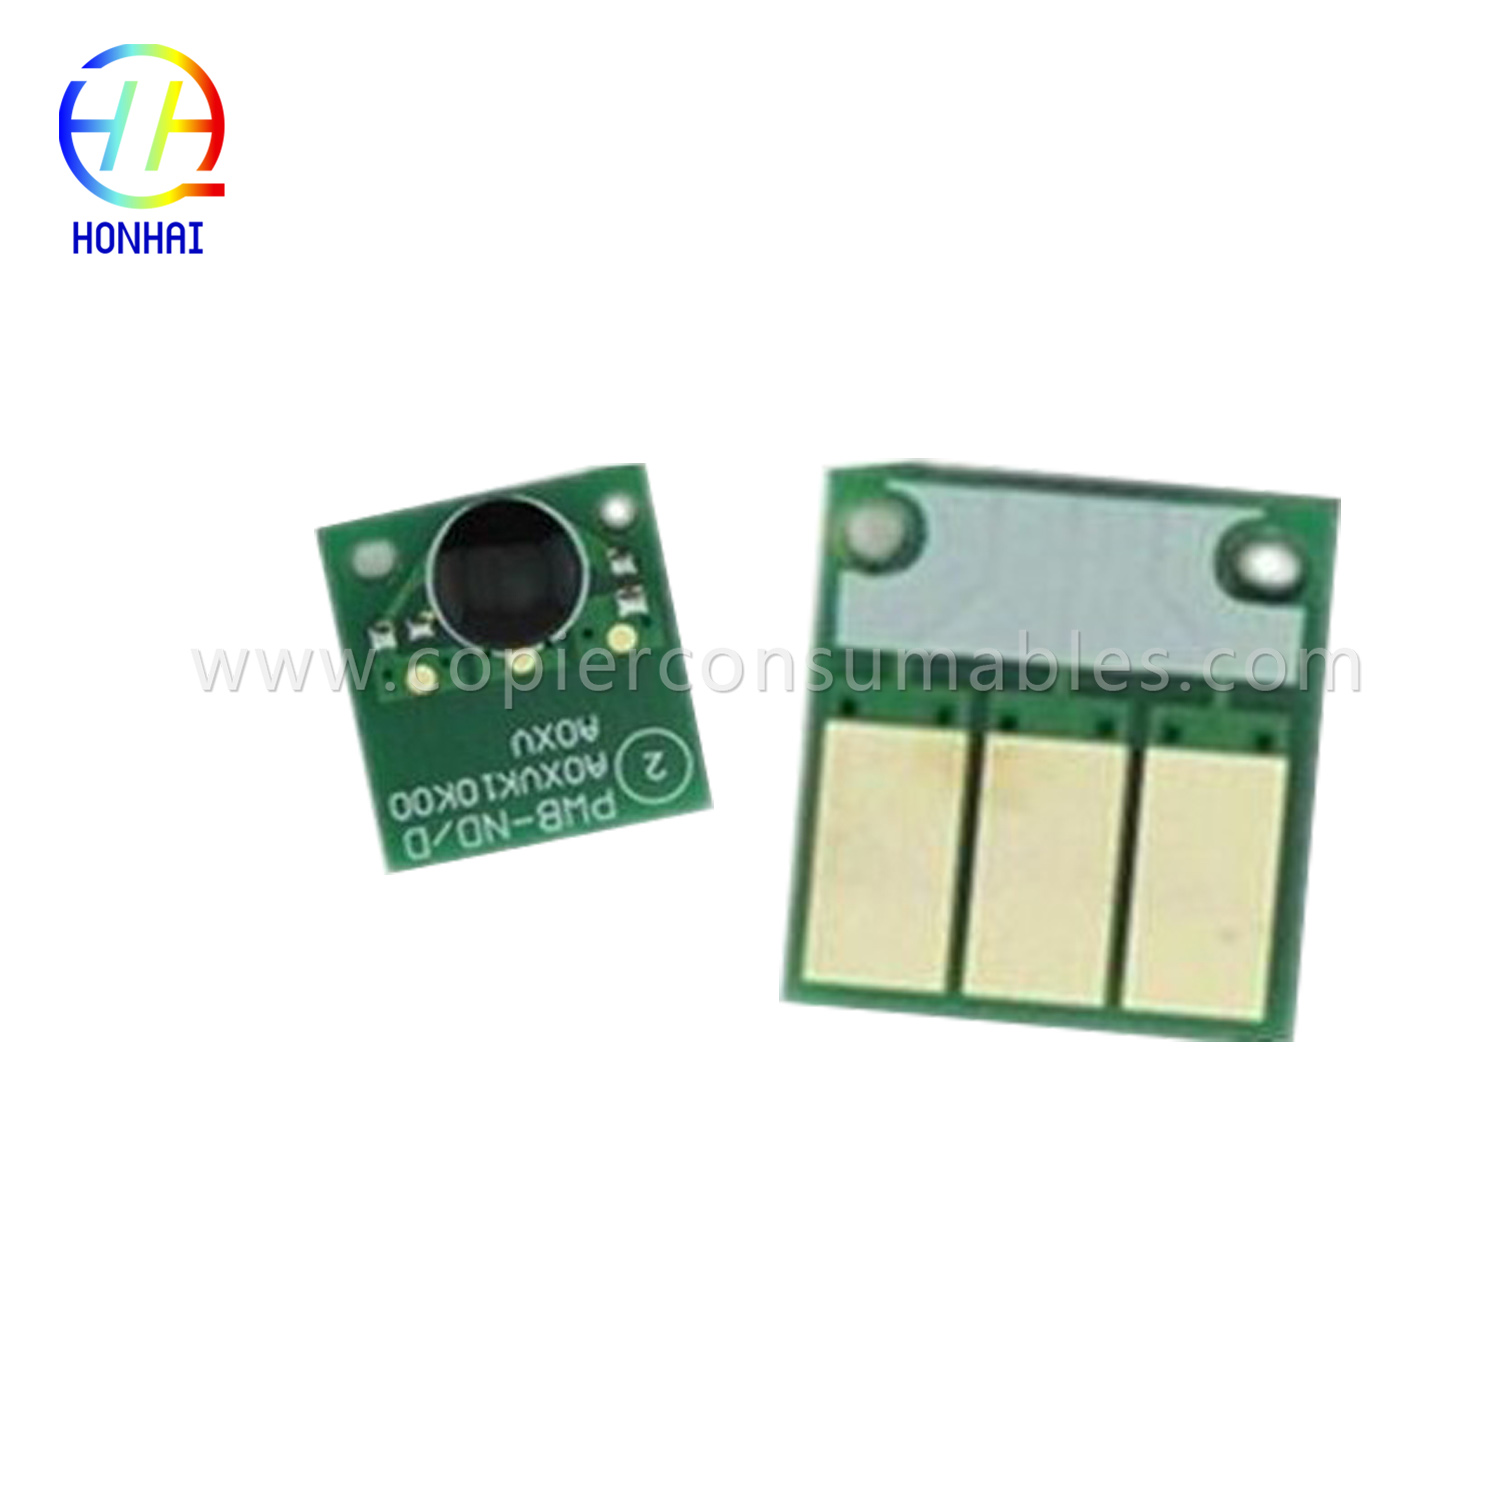 Toner cartridge Chip vir Konica Minolta C220 C280 C360.jpg-1 拷贝